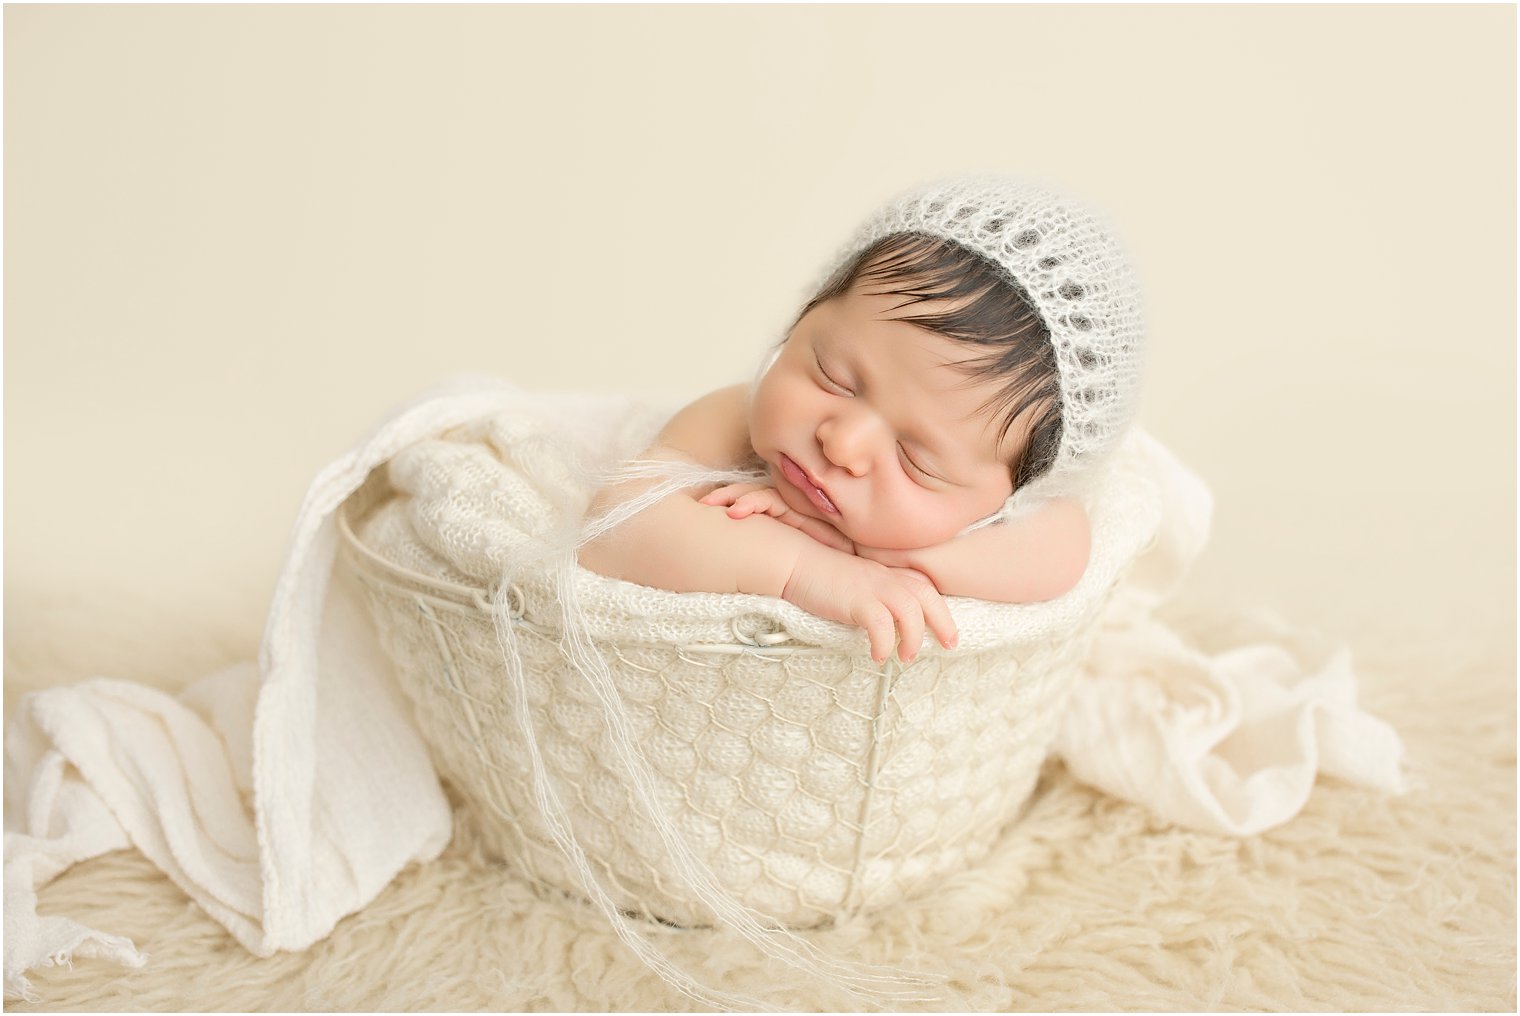 Newborn baby in a basket